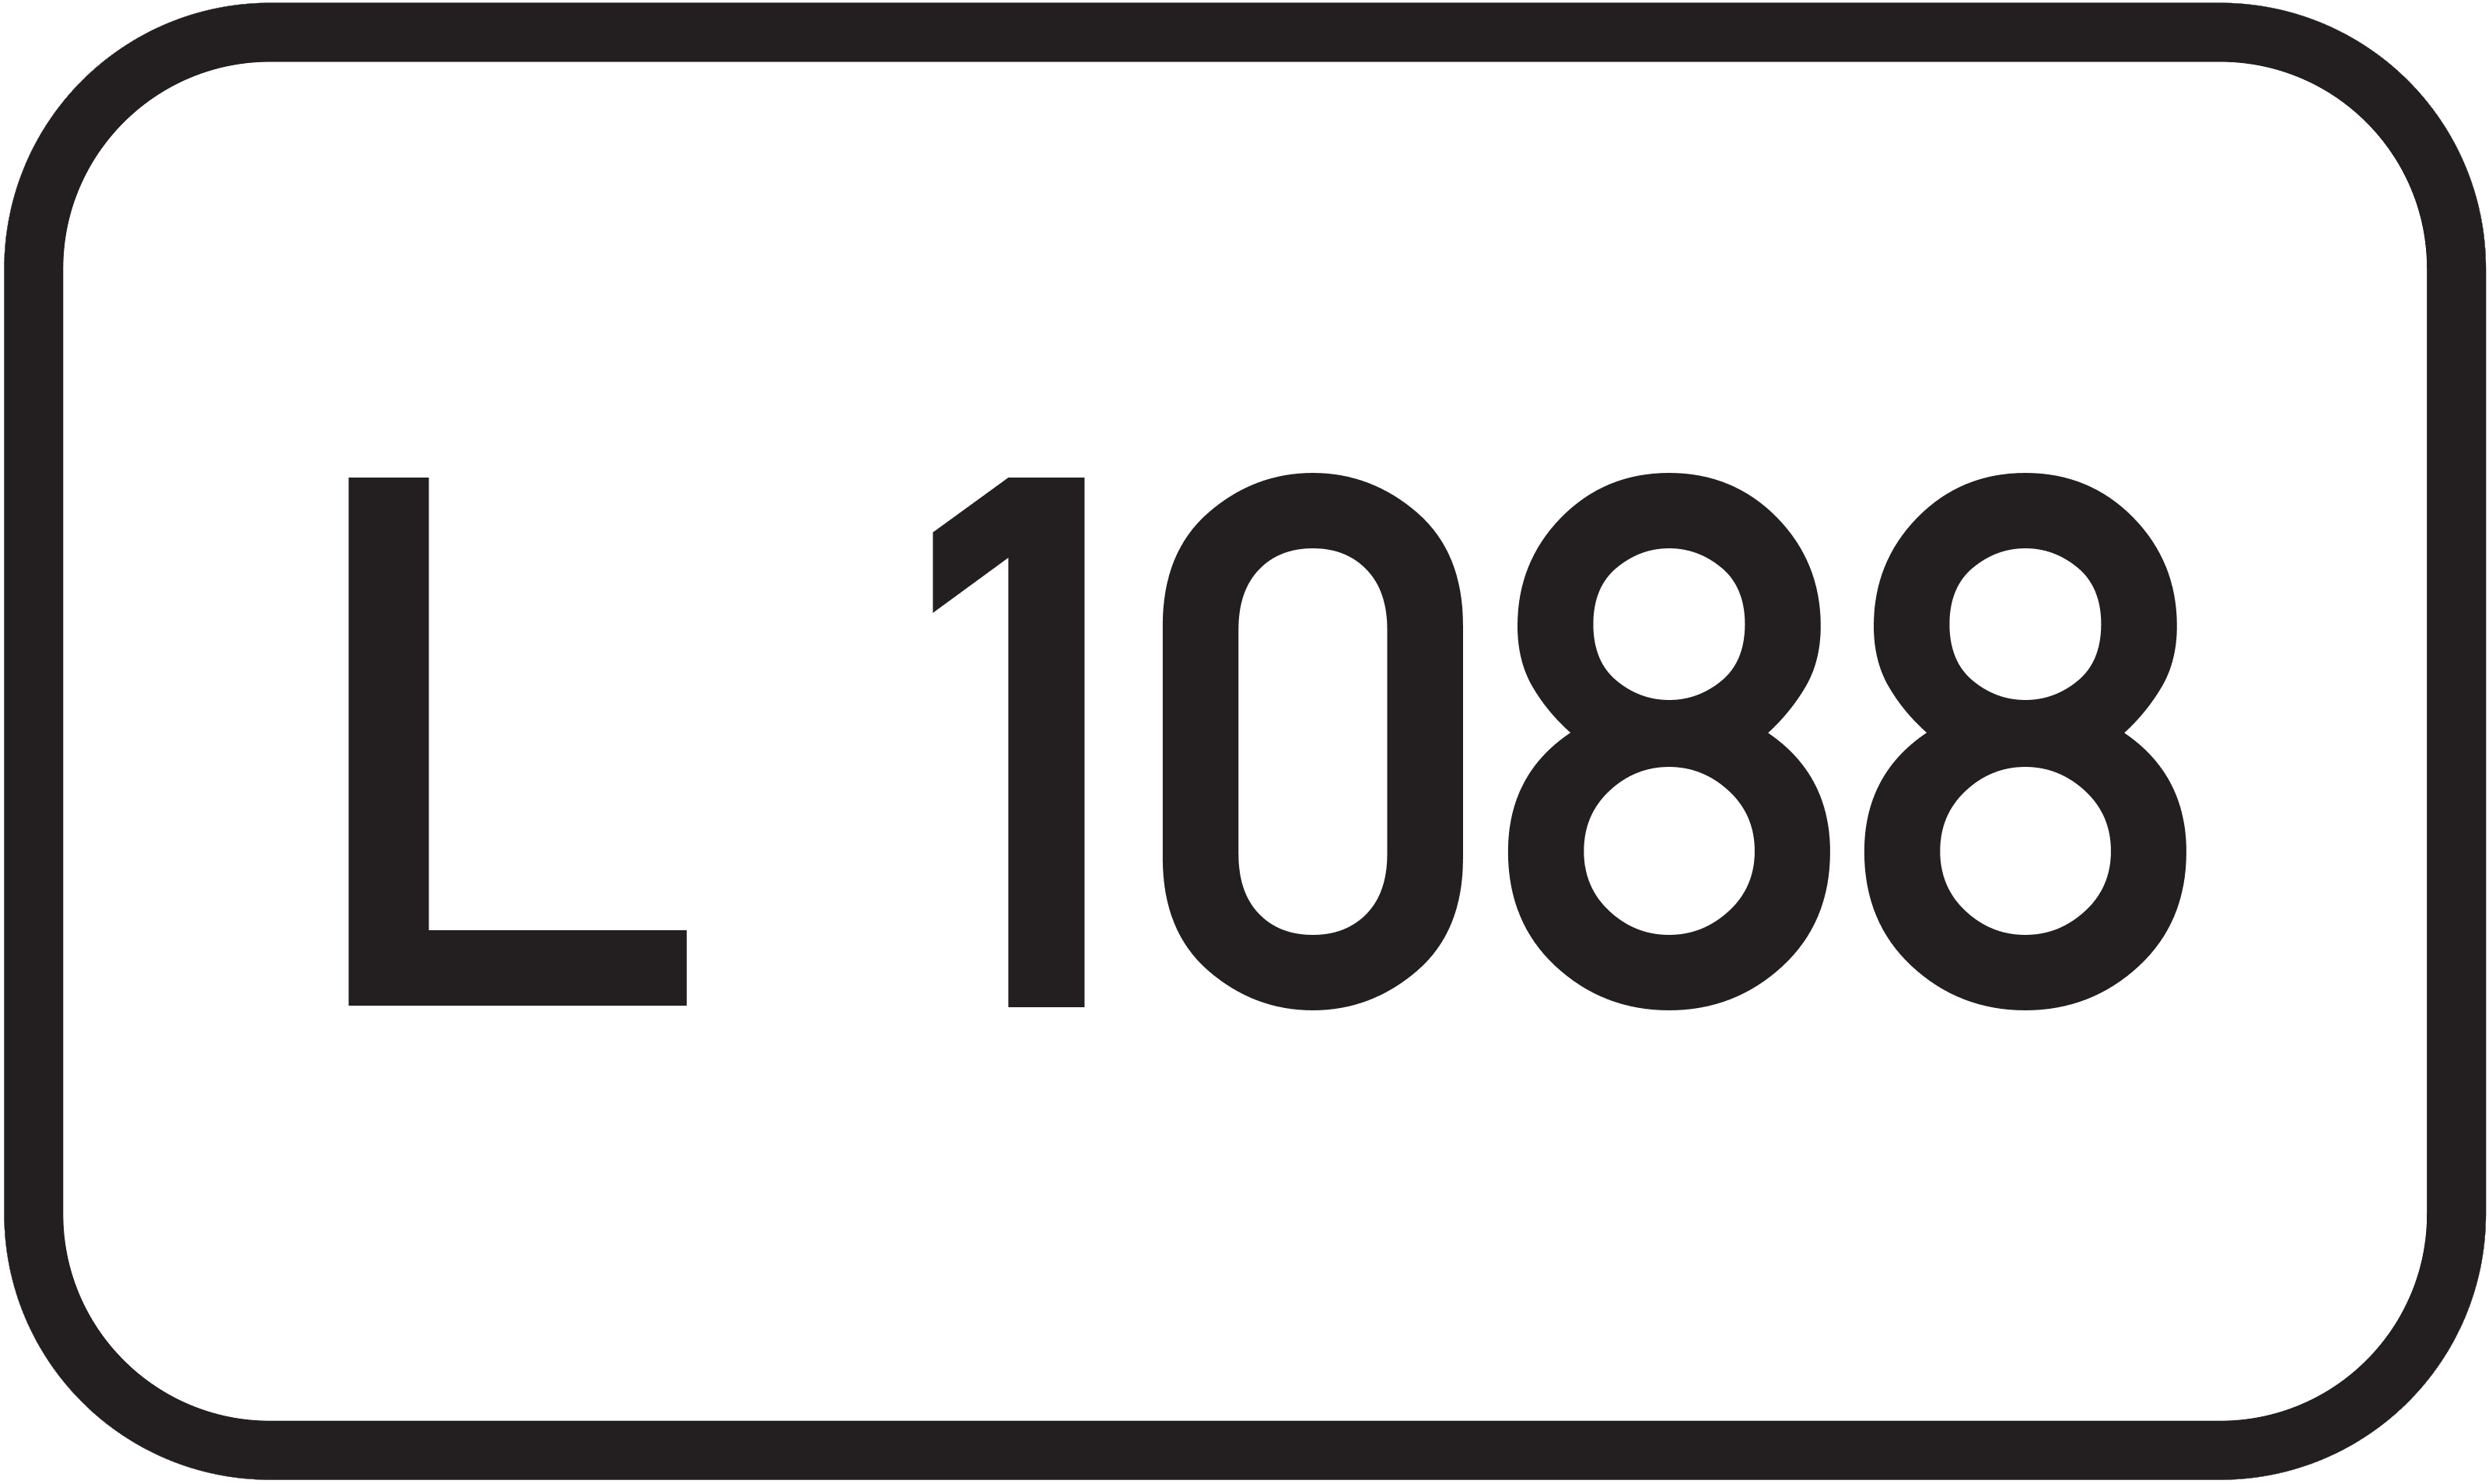 Landesstraße L 1088